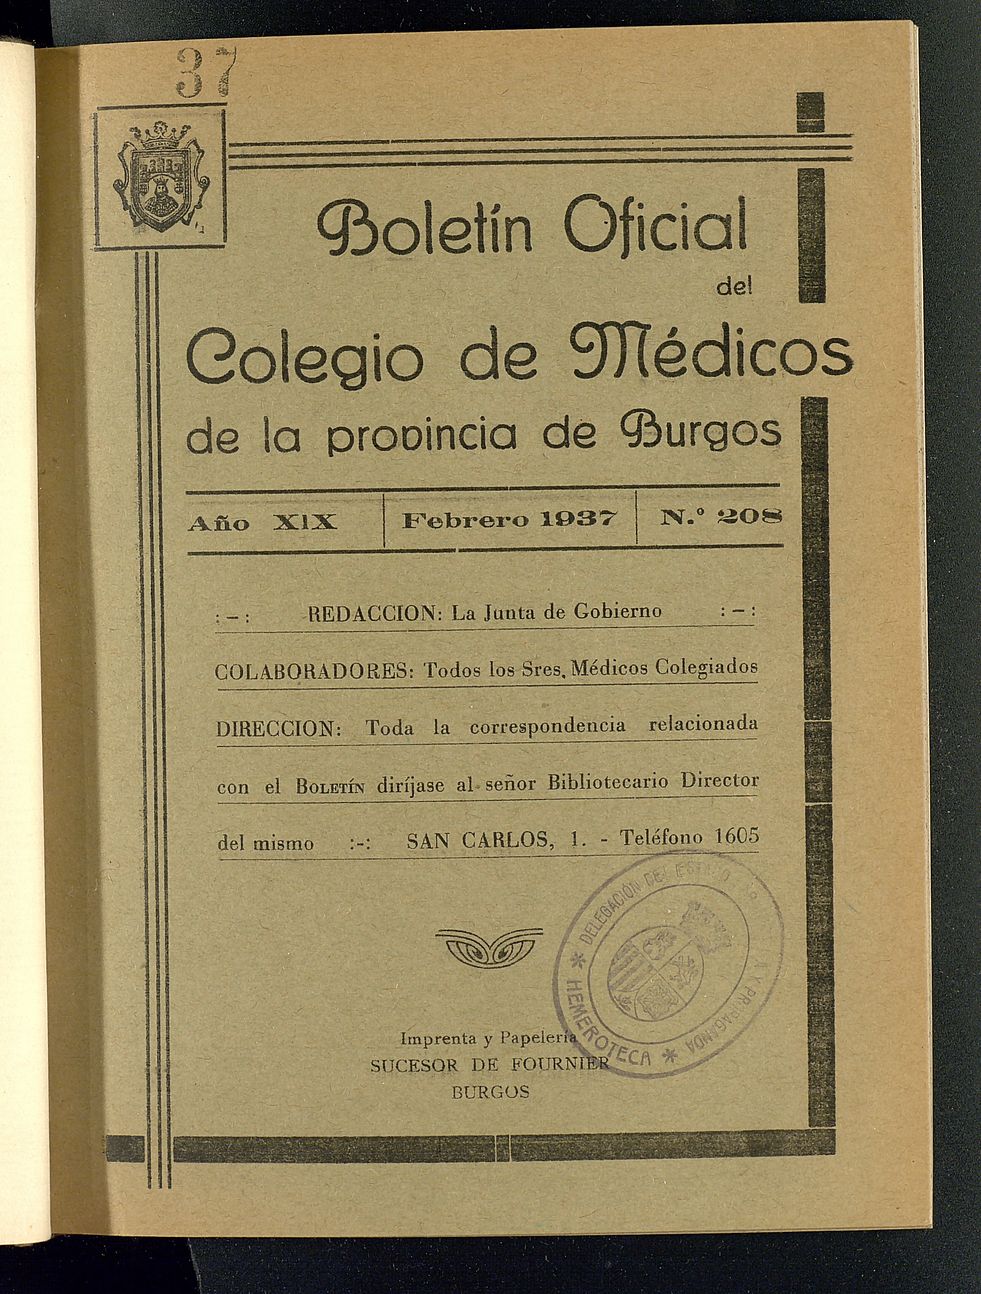 Boletín Oficial del Colegio de Médicos de la Provincia de Burgos. Febrero de 1937, nº 208